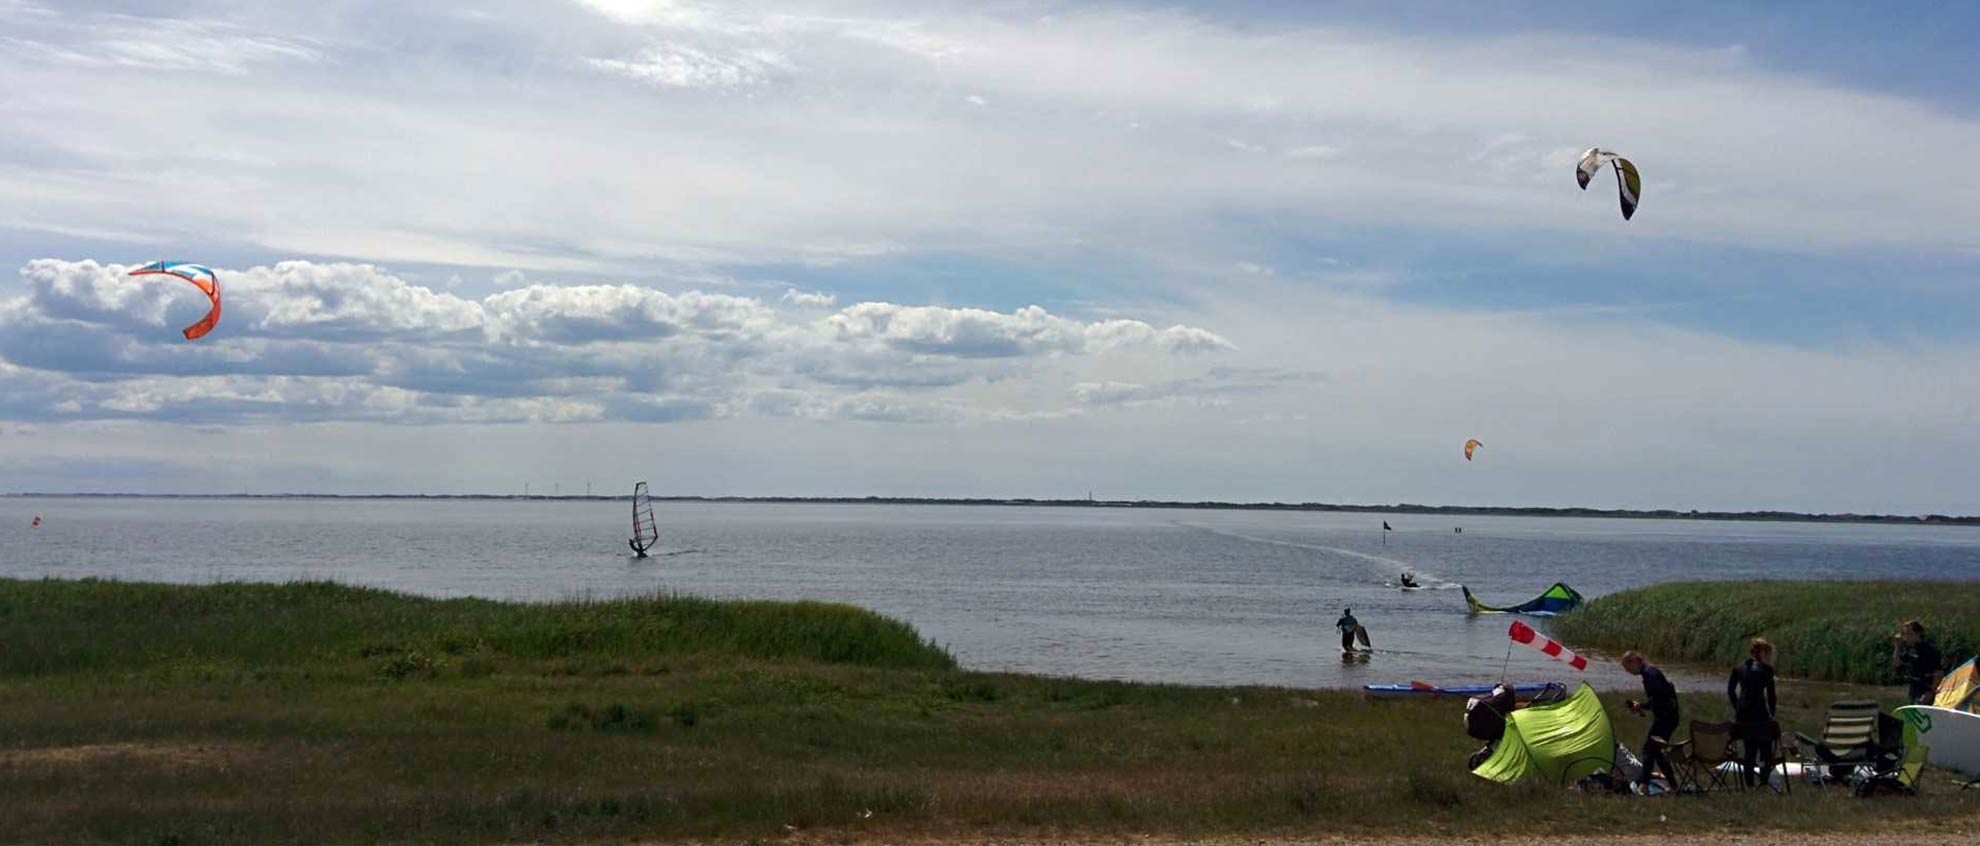 Blick auf das Meer mit Kitesurfern am Strand und im Wasser